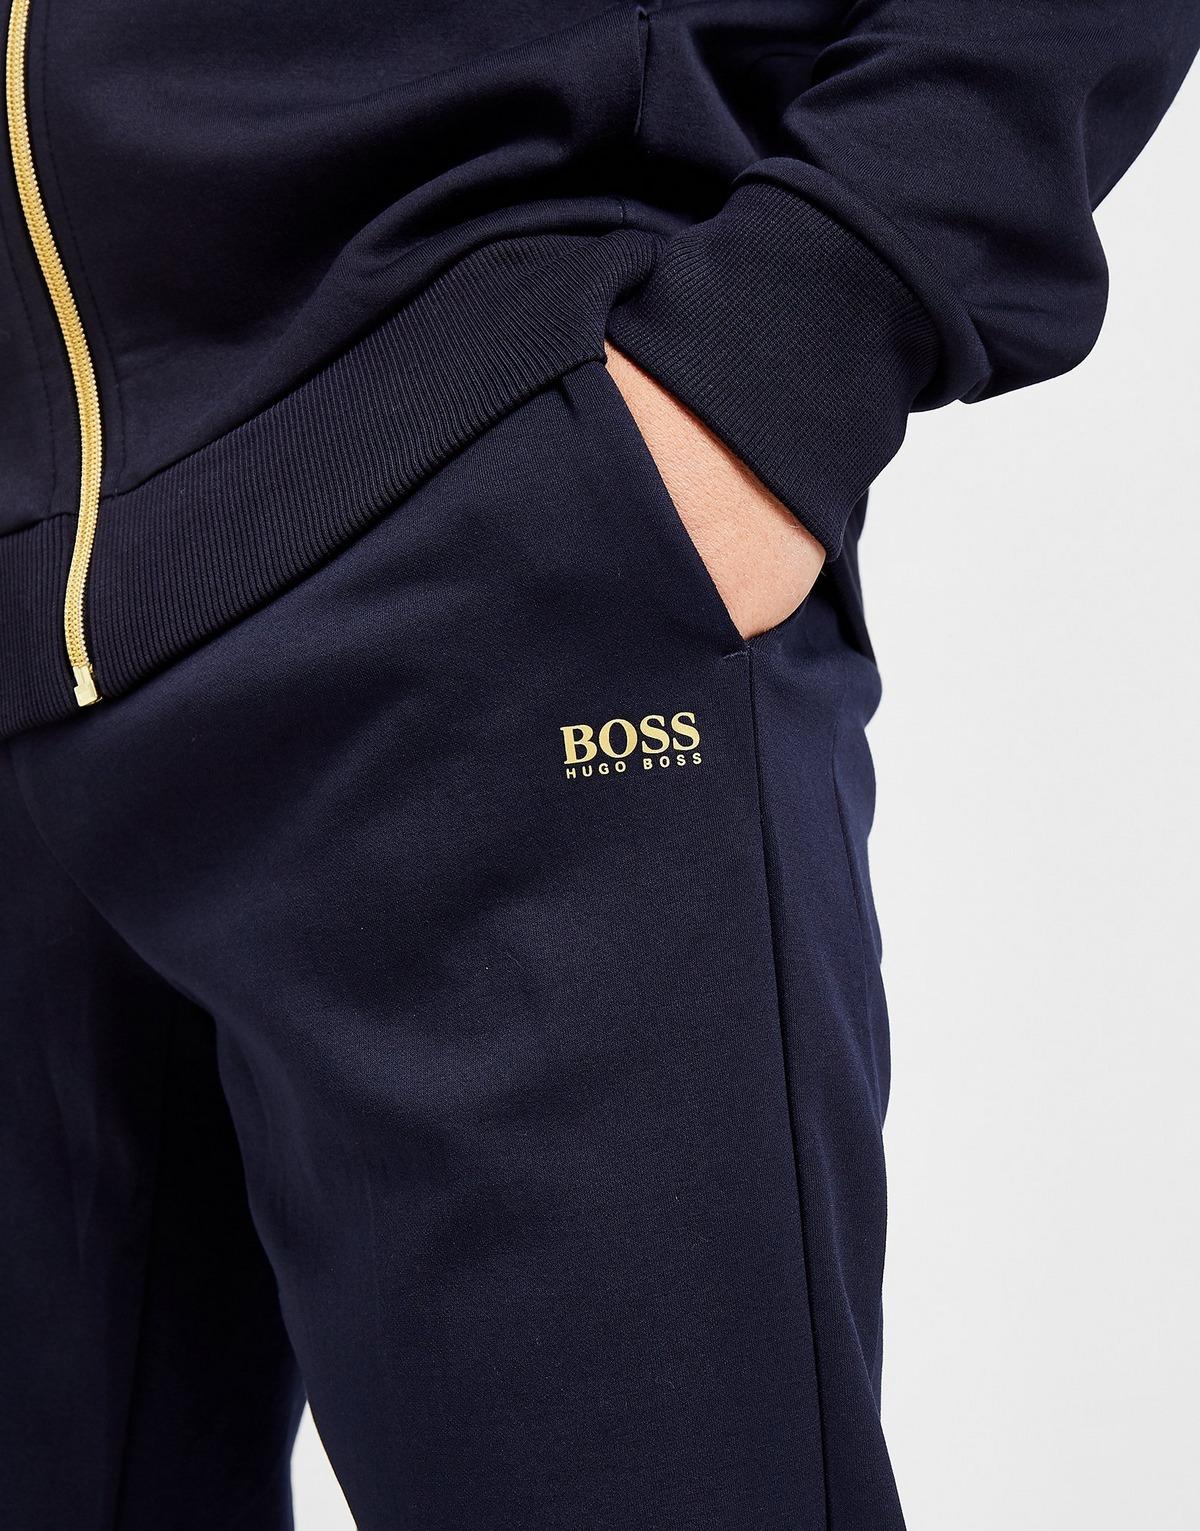 BOSS by Hugo Boss Halvo Fleece Joggers in Blue/Gold (Blue) for Men - Lyst